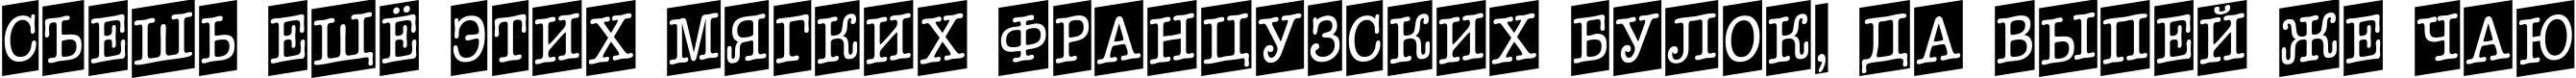 Пример написания шрифтом a_OldTyperNrCmUp текста на русском